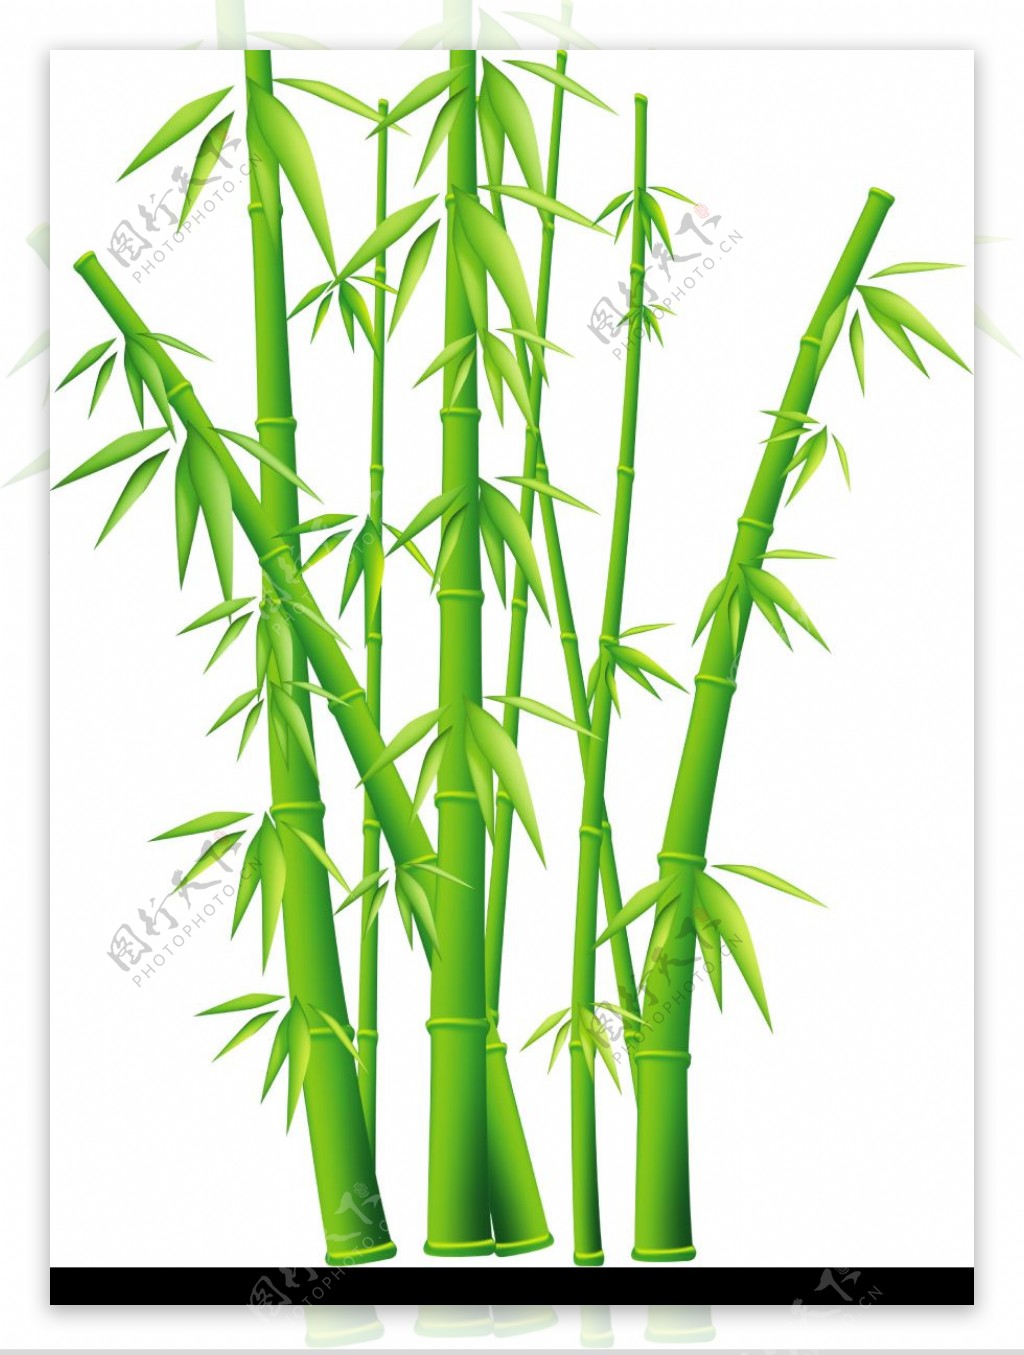 翠绿的竹子只是被抠出来图片